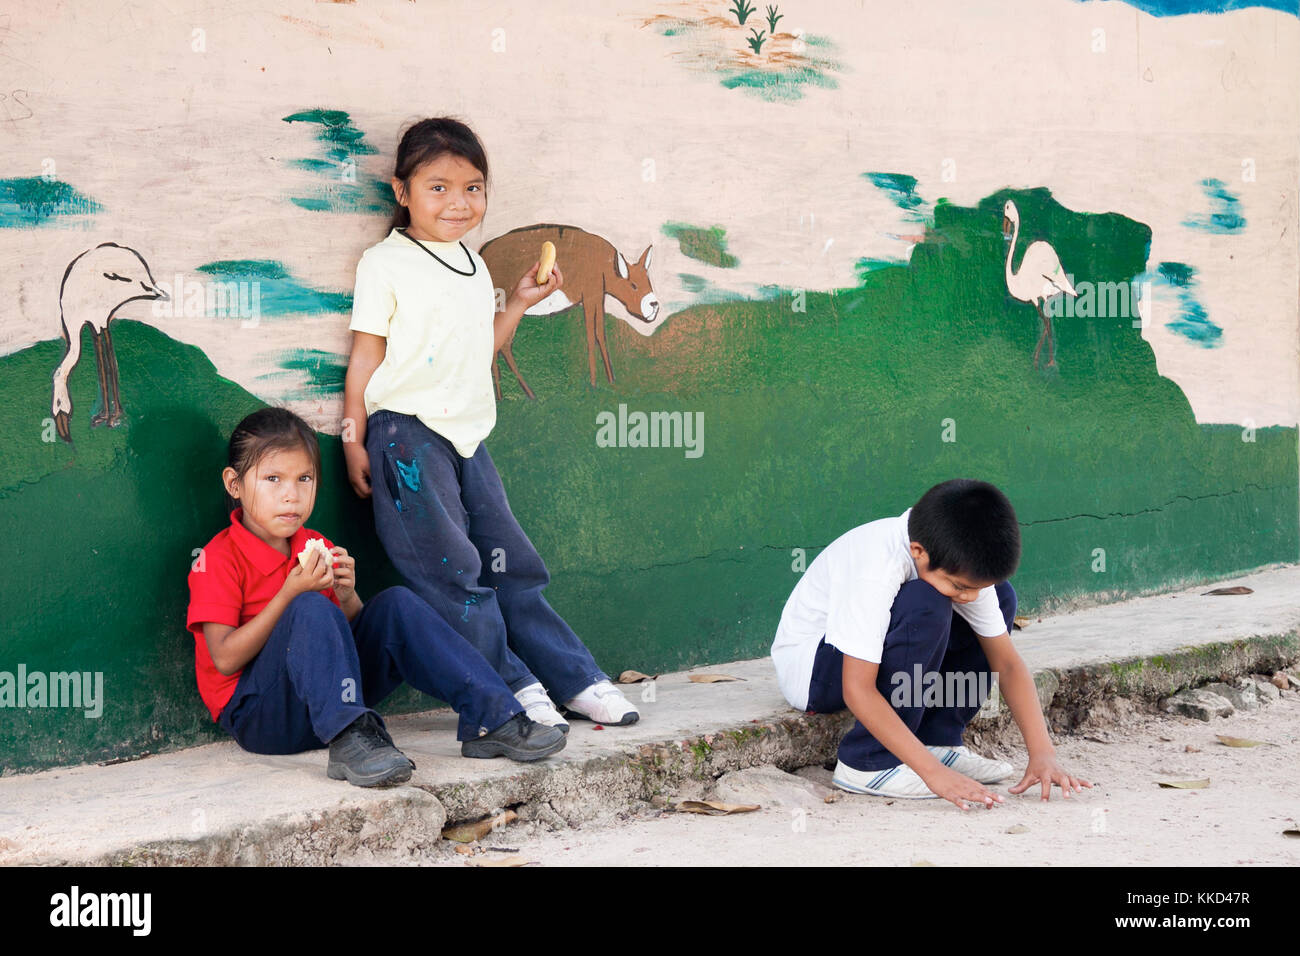 Canaima, Venezuela, 11. November 2010: Kinder essen Ihre einfaches Mittagessen außerhalb der Schule neben einer bemalten Wand Stockfoto